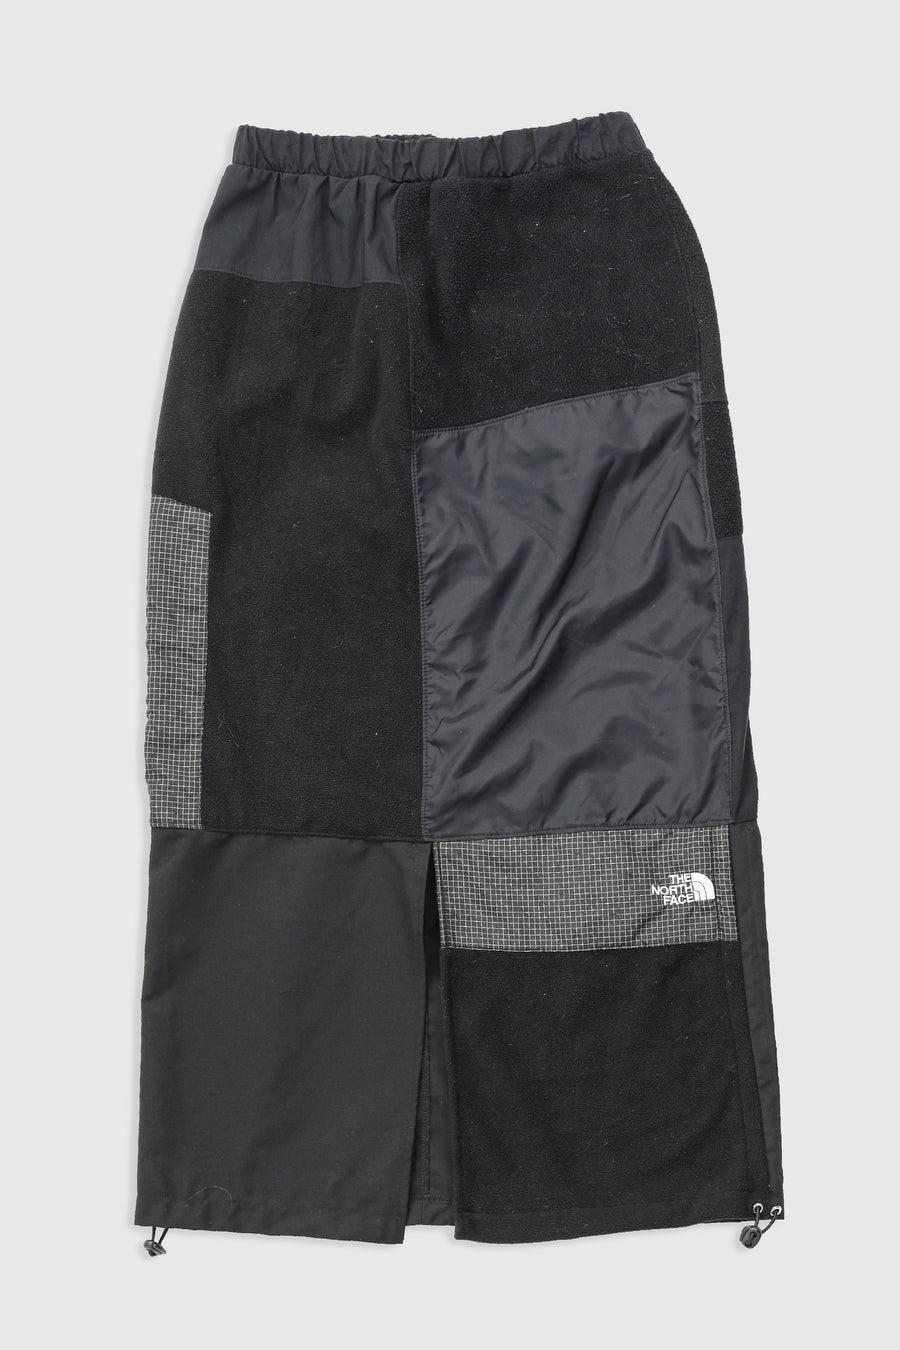 Rework North Face Fleece Long Skirt - S